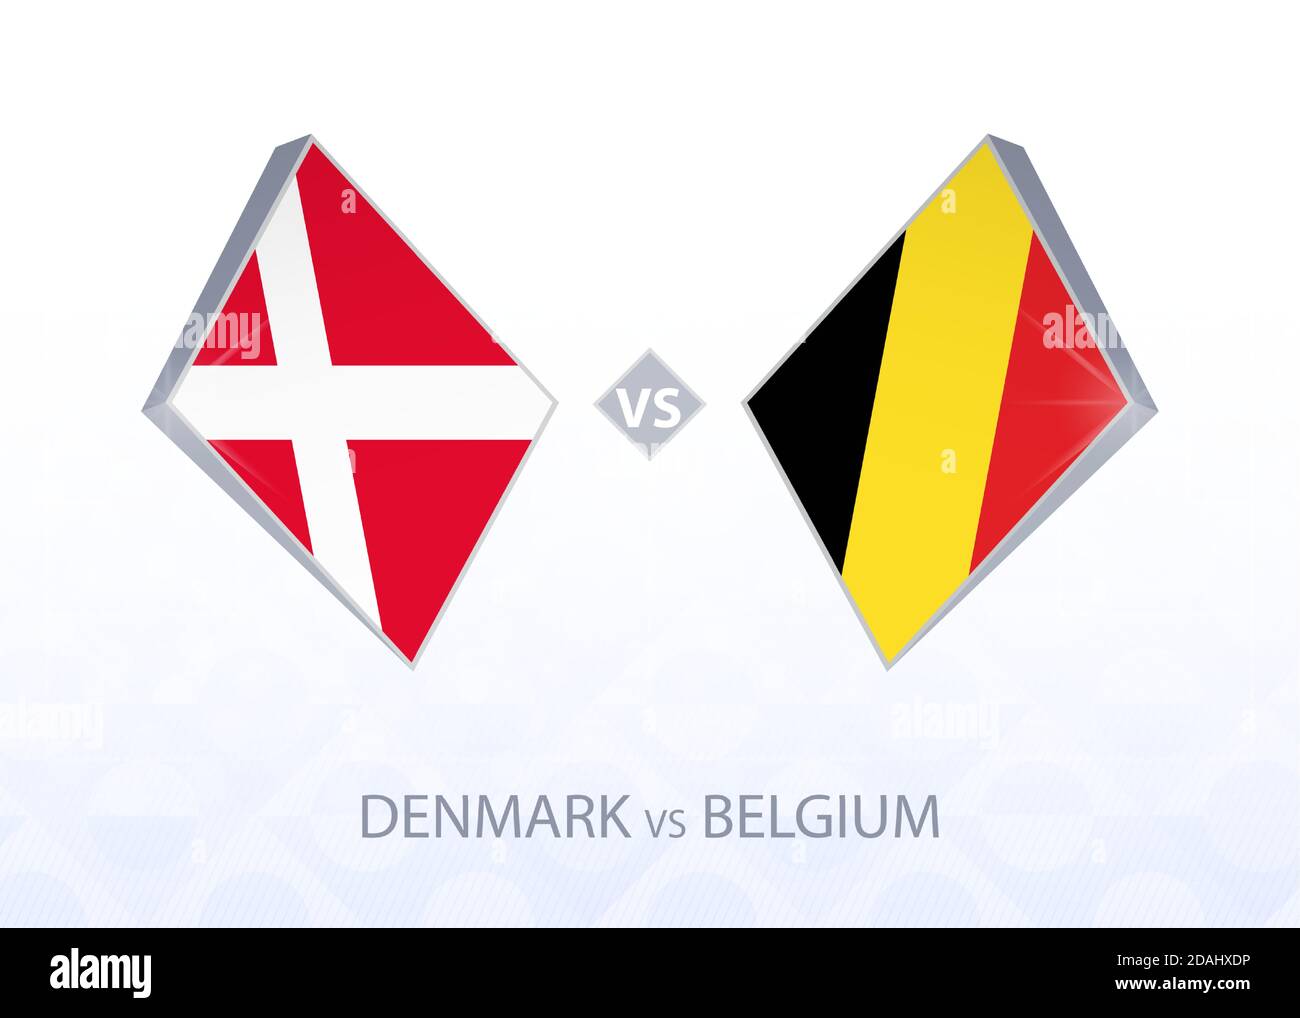 Denmark vs belgium